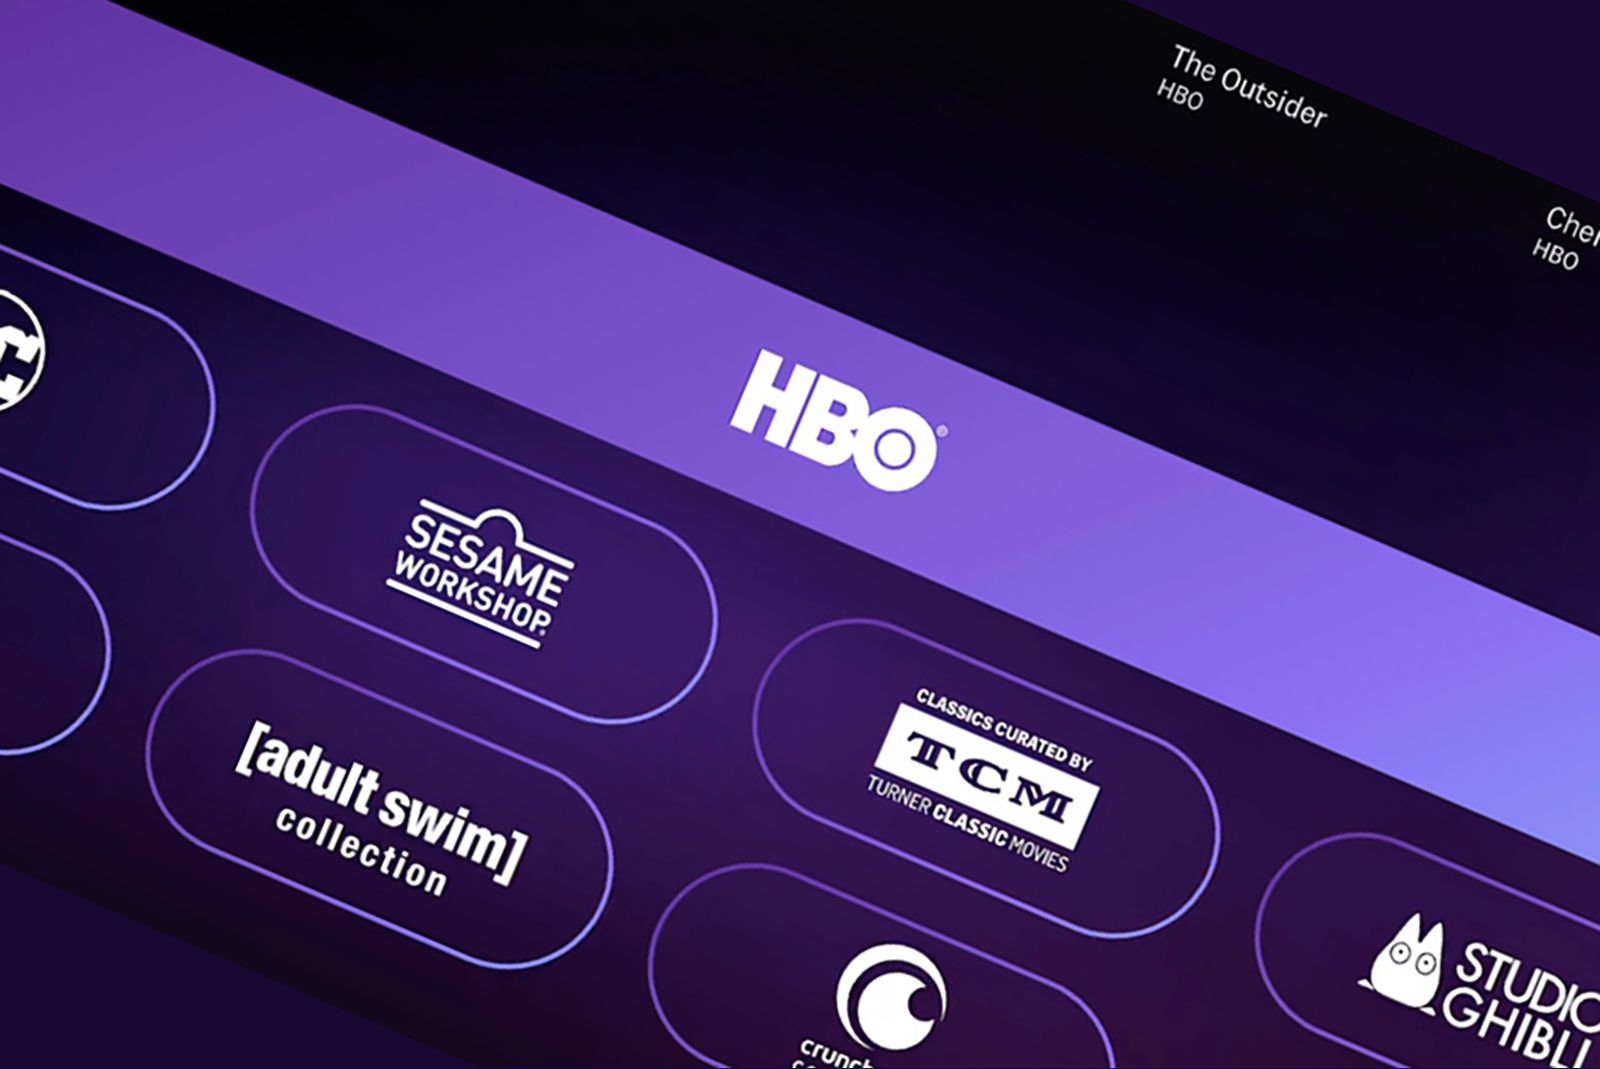 HBO Max agora é Max  Planos, programações e preços 2023